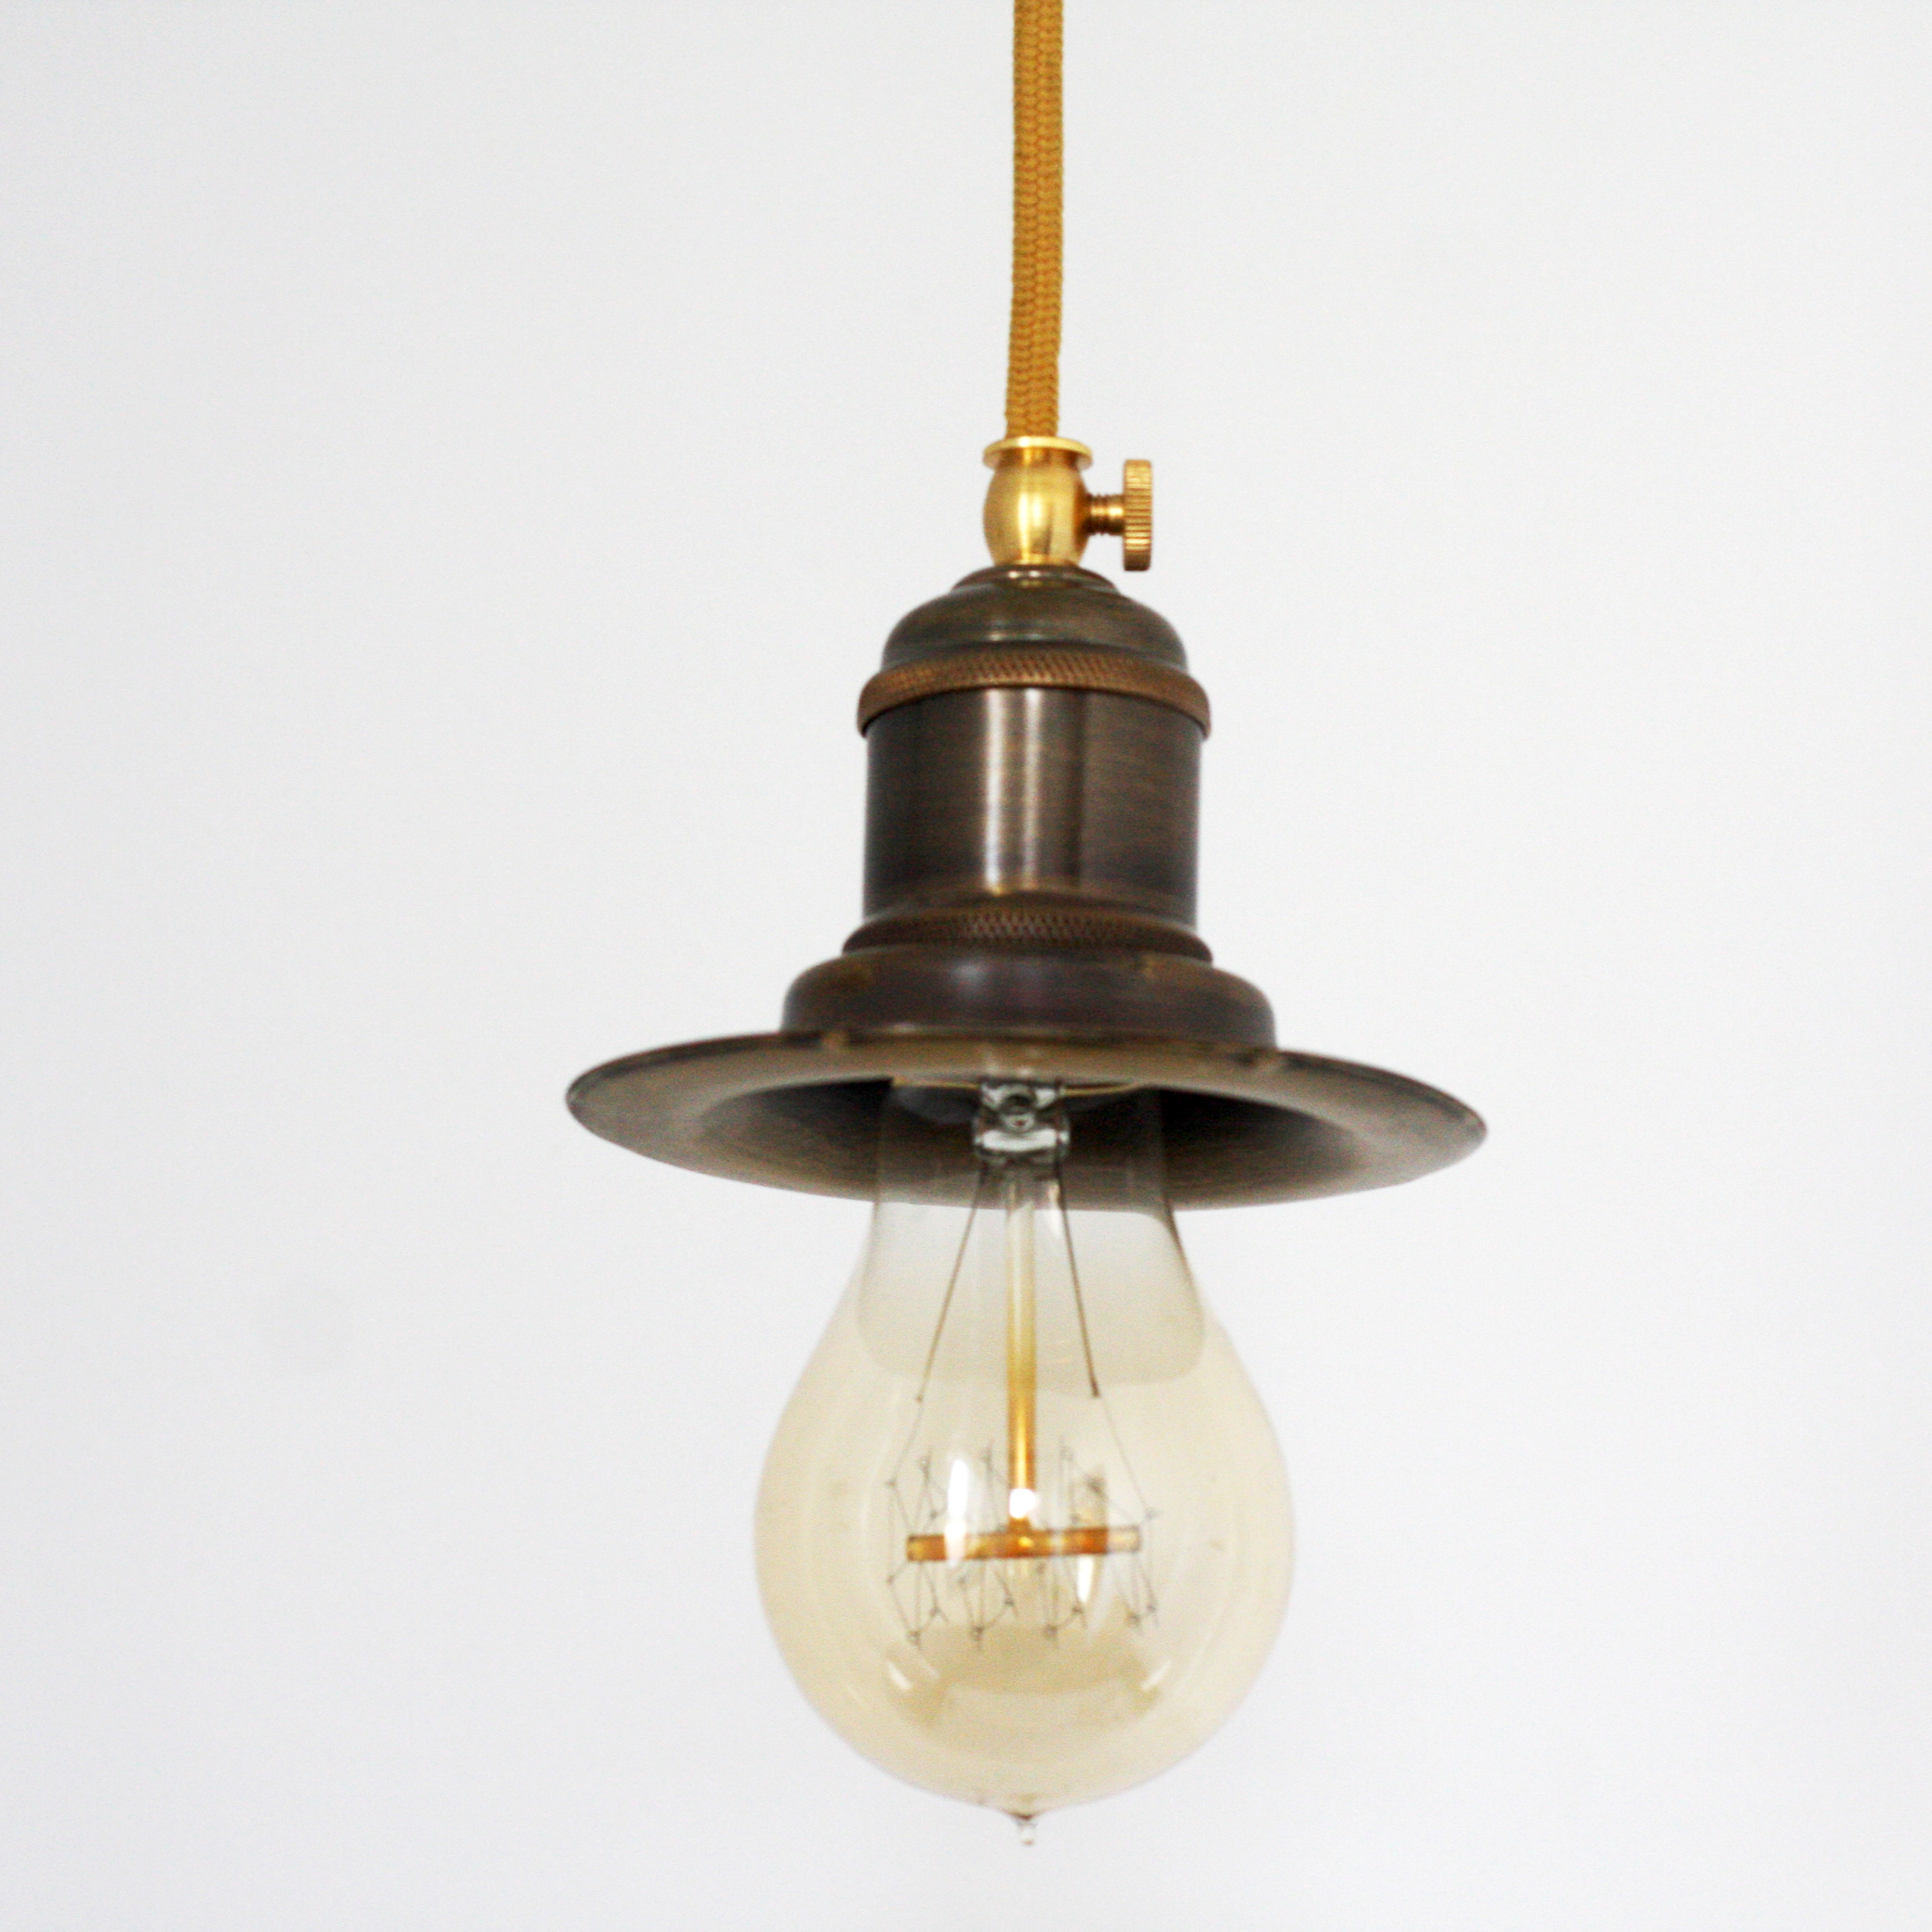 

Подвесной светильник для кухни, бара, прихожей, коридора Small hat 954-1 латунь темная патина/латунь коричневый PikArt